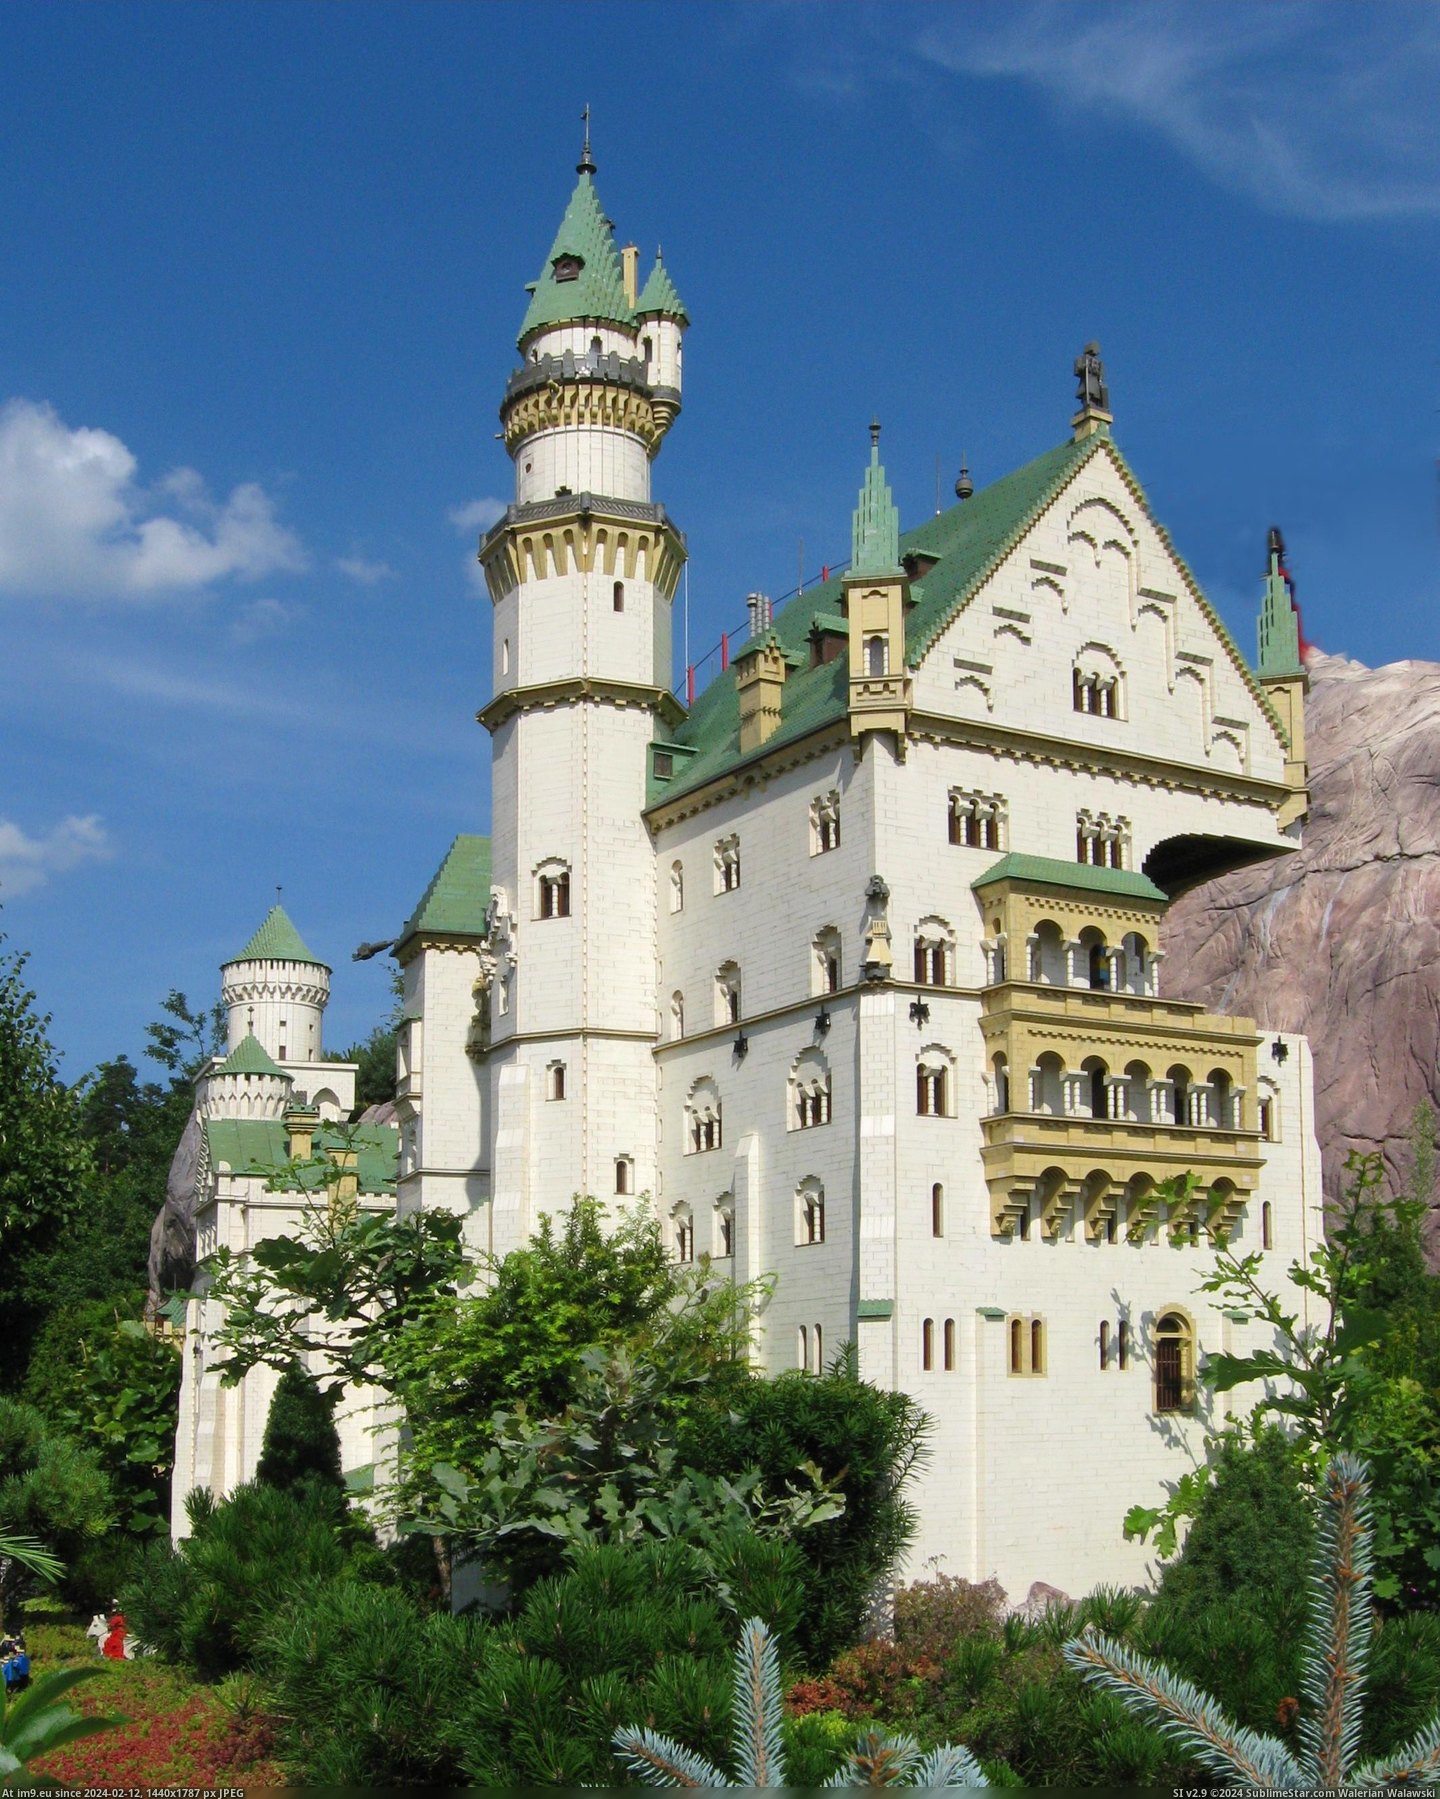 Neuschwanstein Legoland (in Schloss Neuschwanstein (Neuschwanstein Castle))